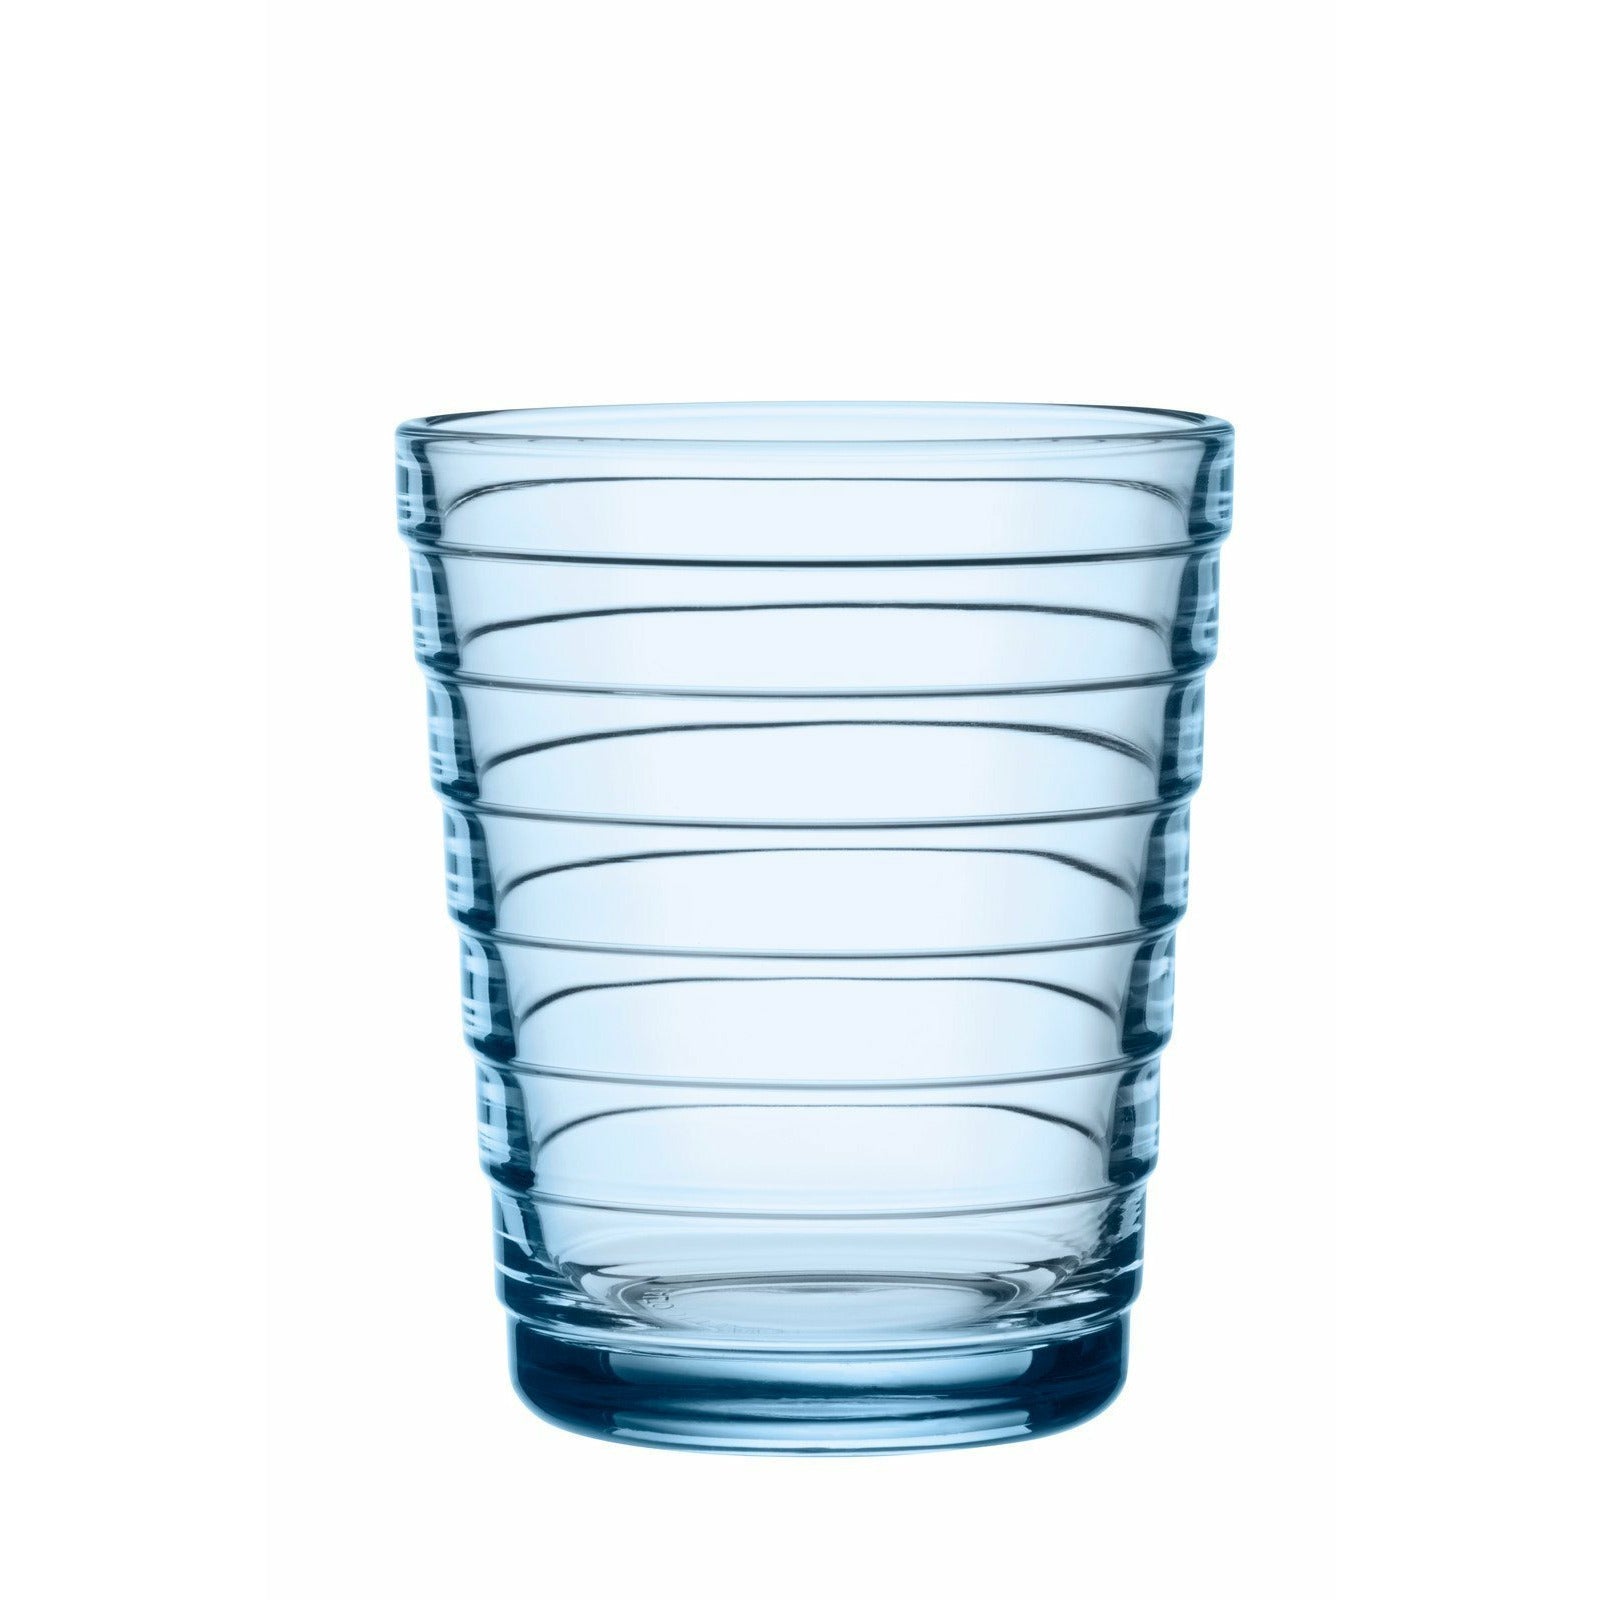 Iittala aino aalto dricka glas aqua 22cl, 2st.